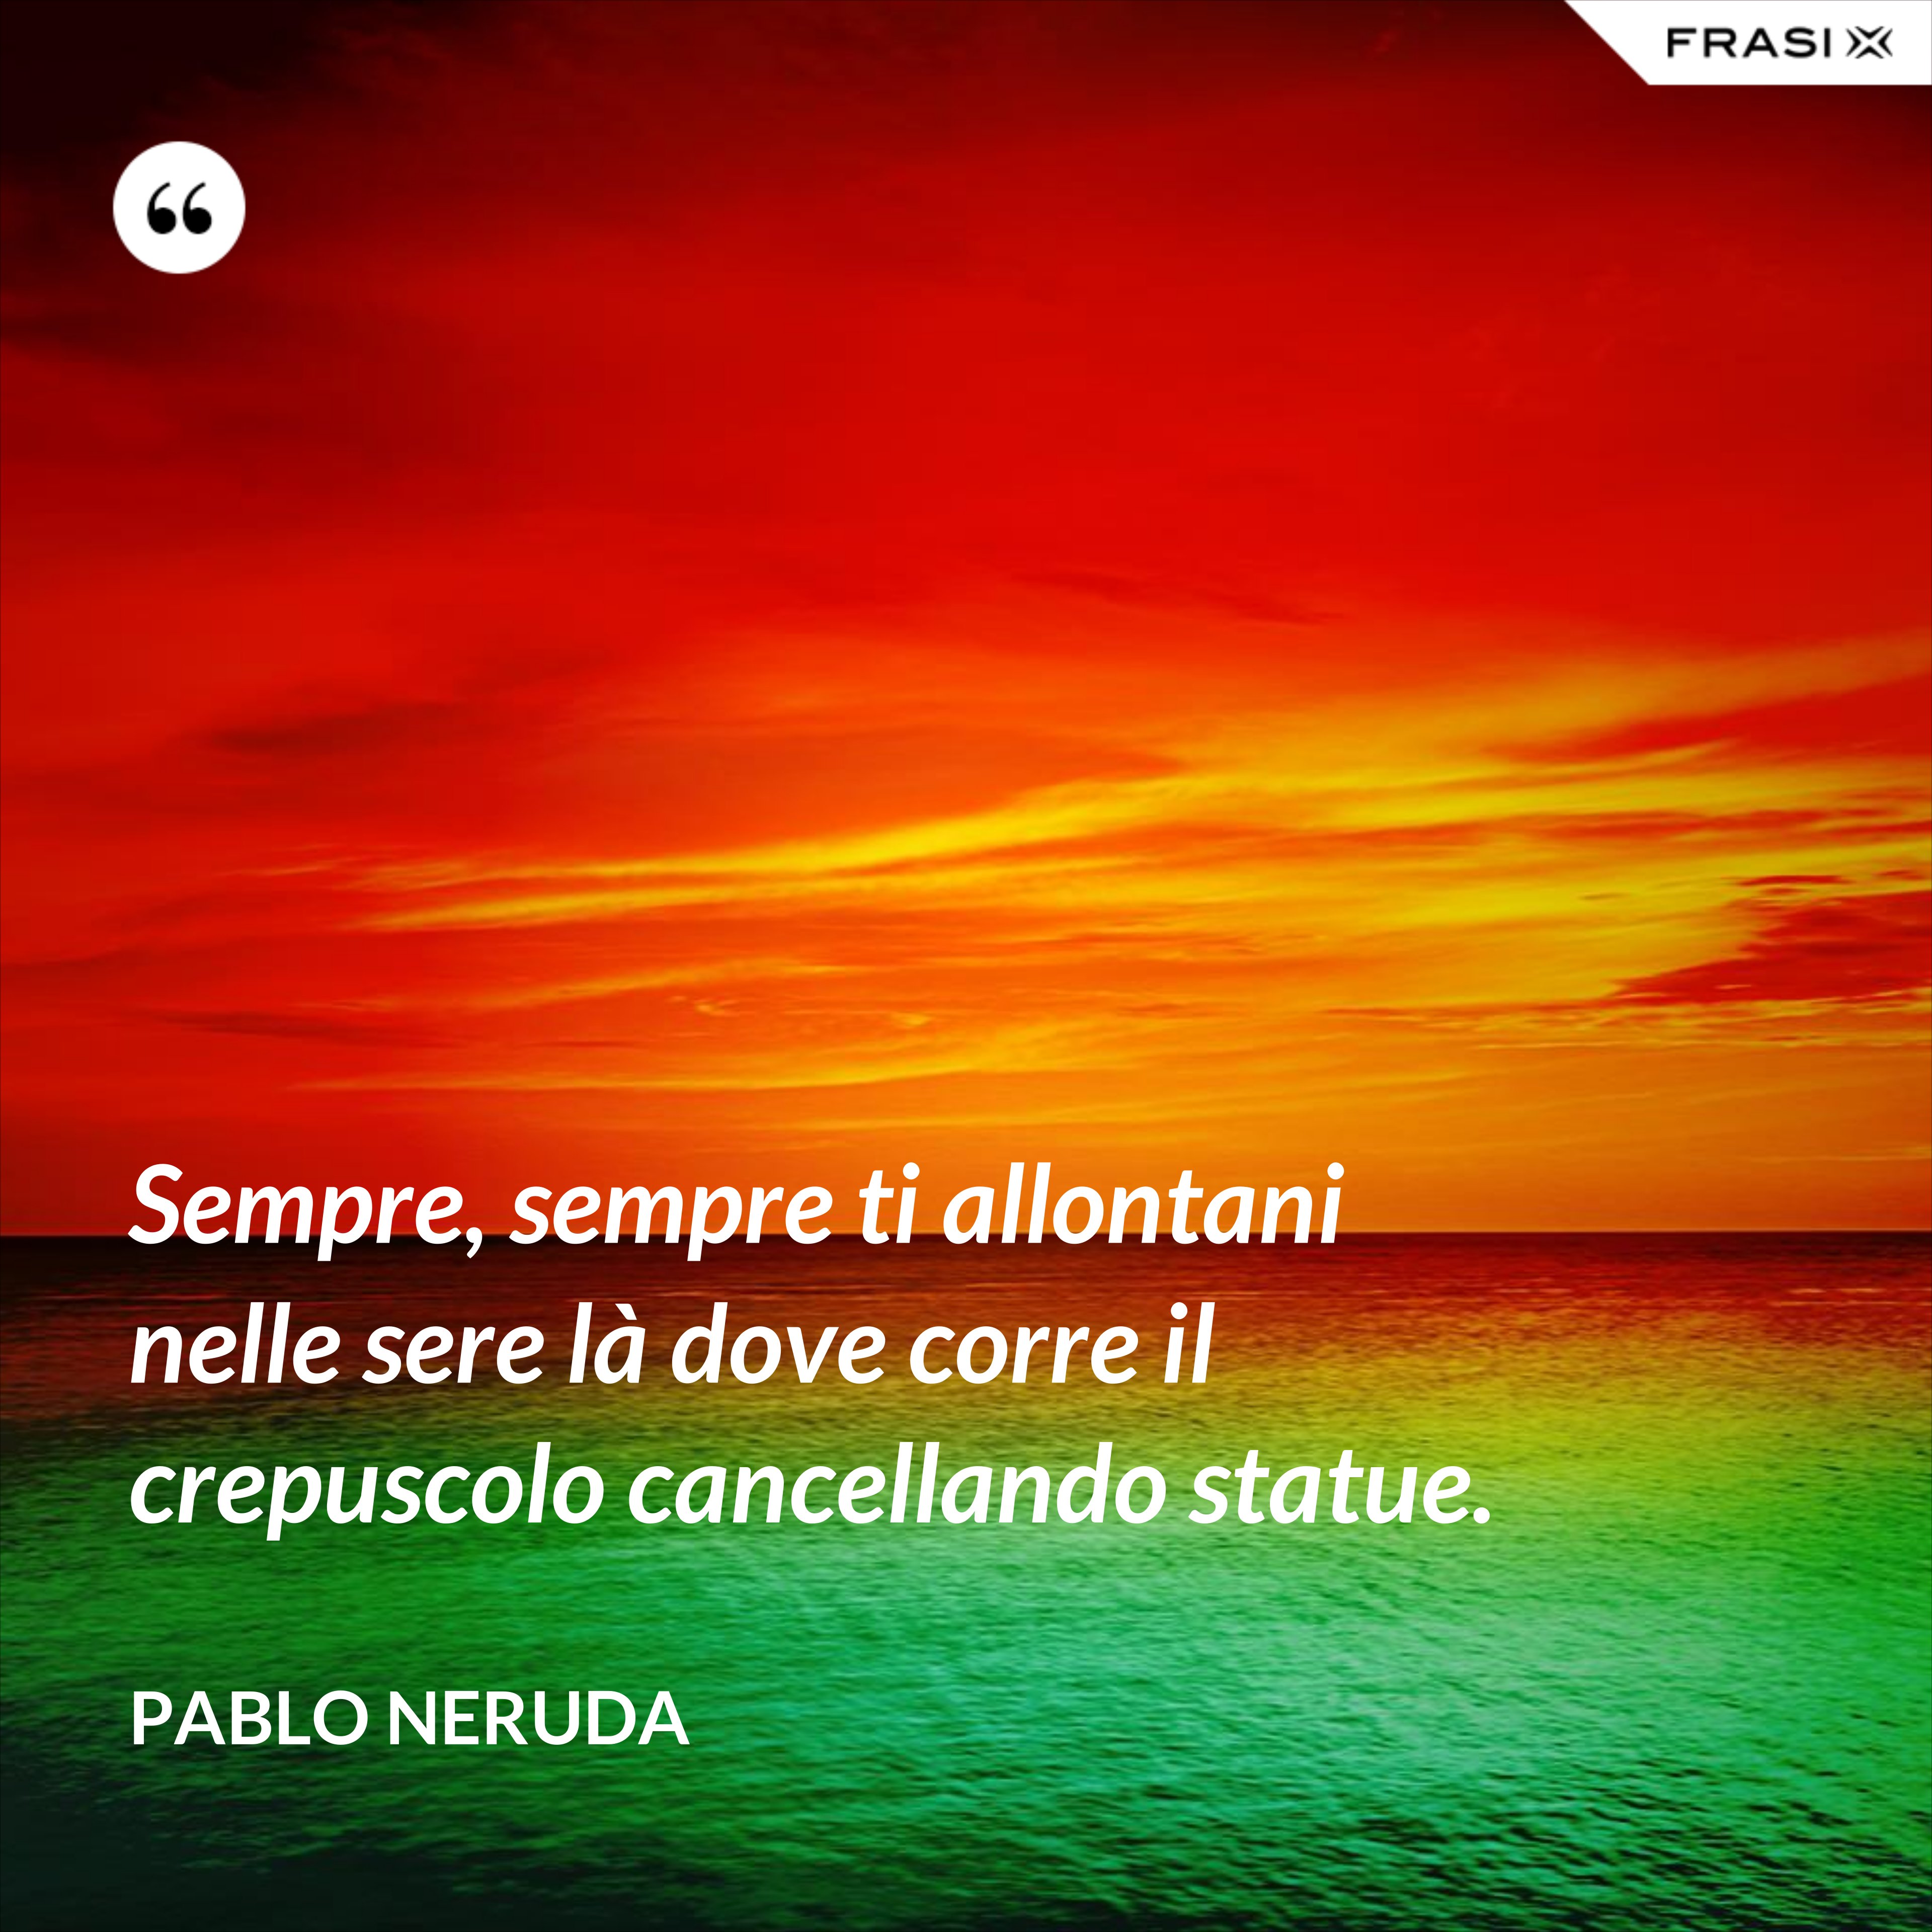 Sempre, sempre ti allontani nelle sere là dove corre il crepuscolo cancellando statue. - Pablo Neruda